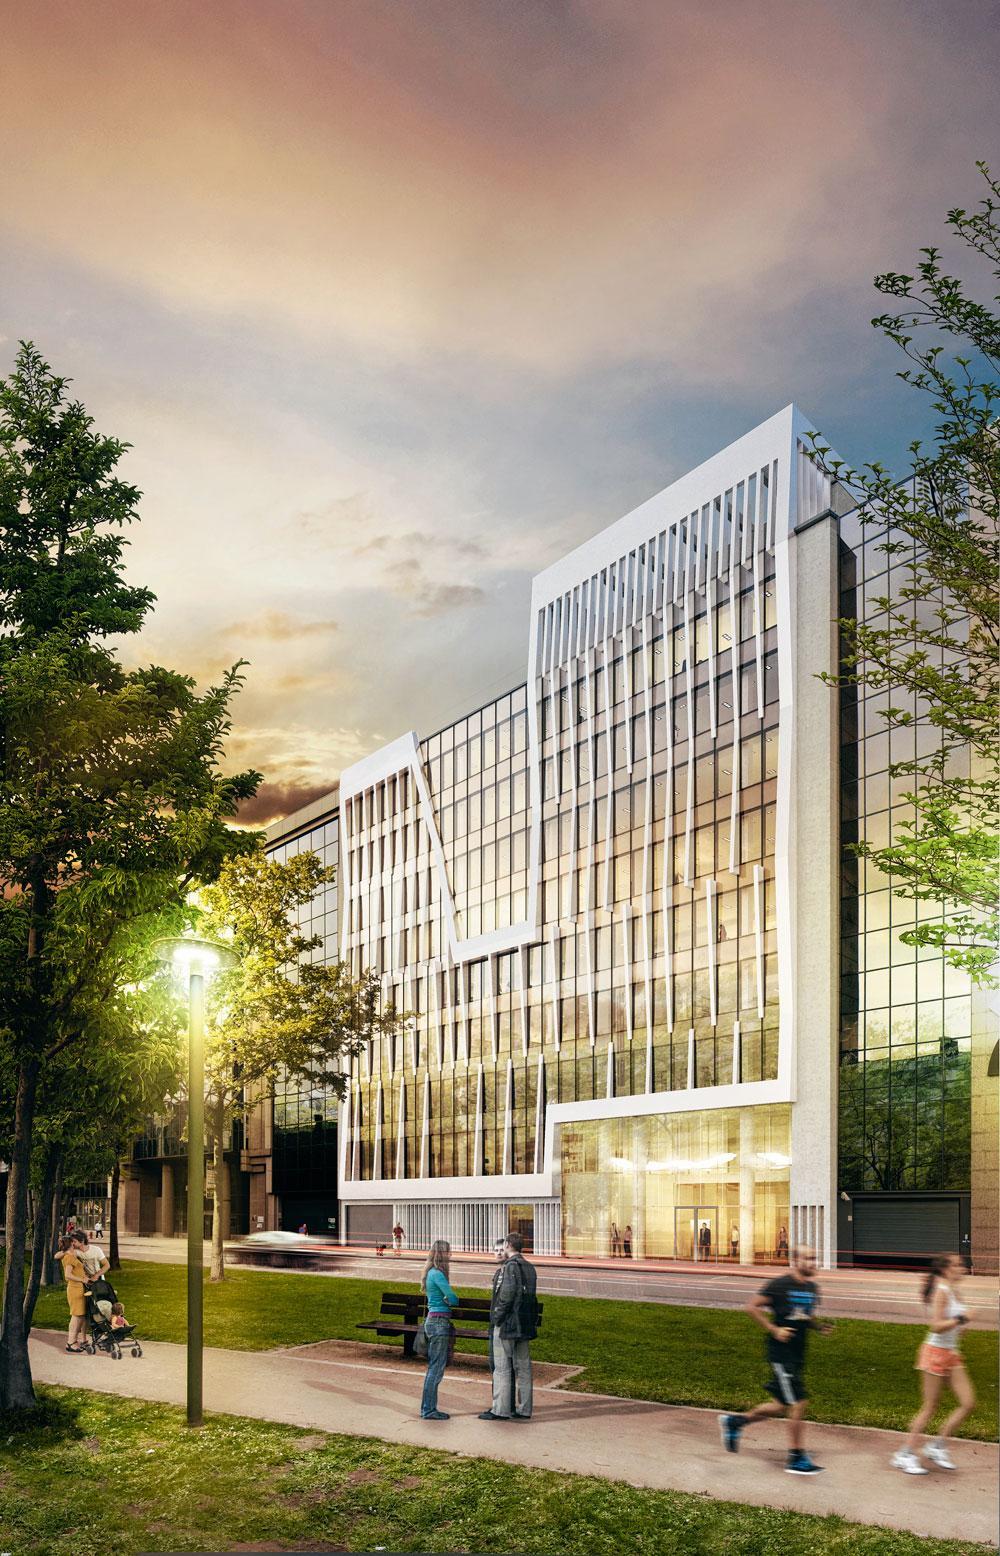 L'immeuble Seven (16.000 m2), développé par Baltisse et Dowtown dans le quartier nord, sera livré mi-2019. Il a enregistré une belle location en accueillant EDF Luminus.